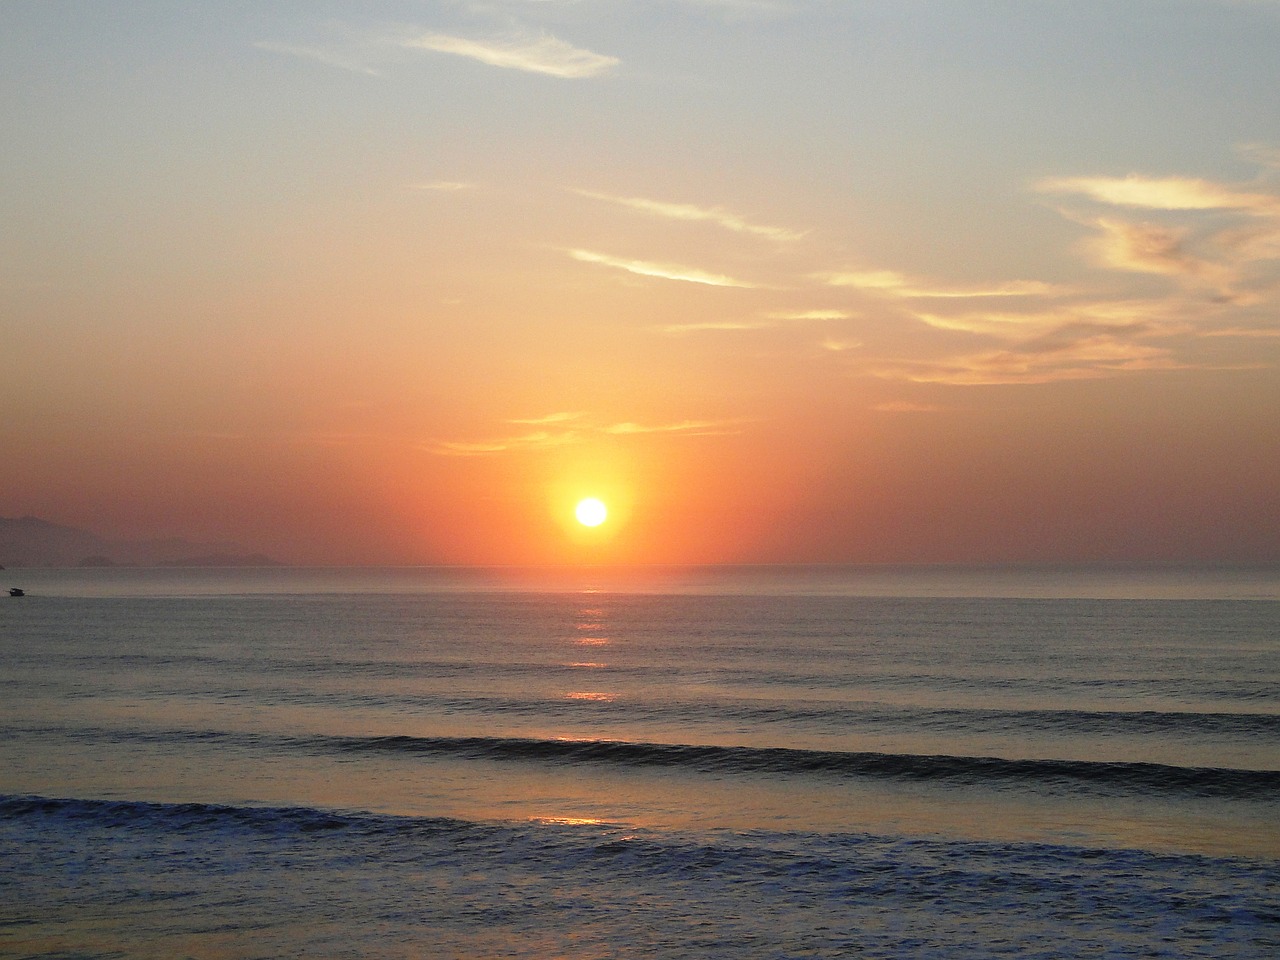 dawn sol beach free photo